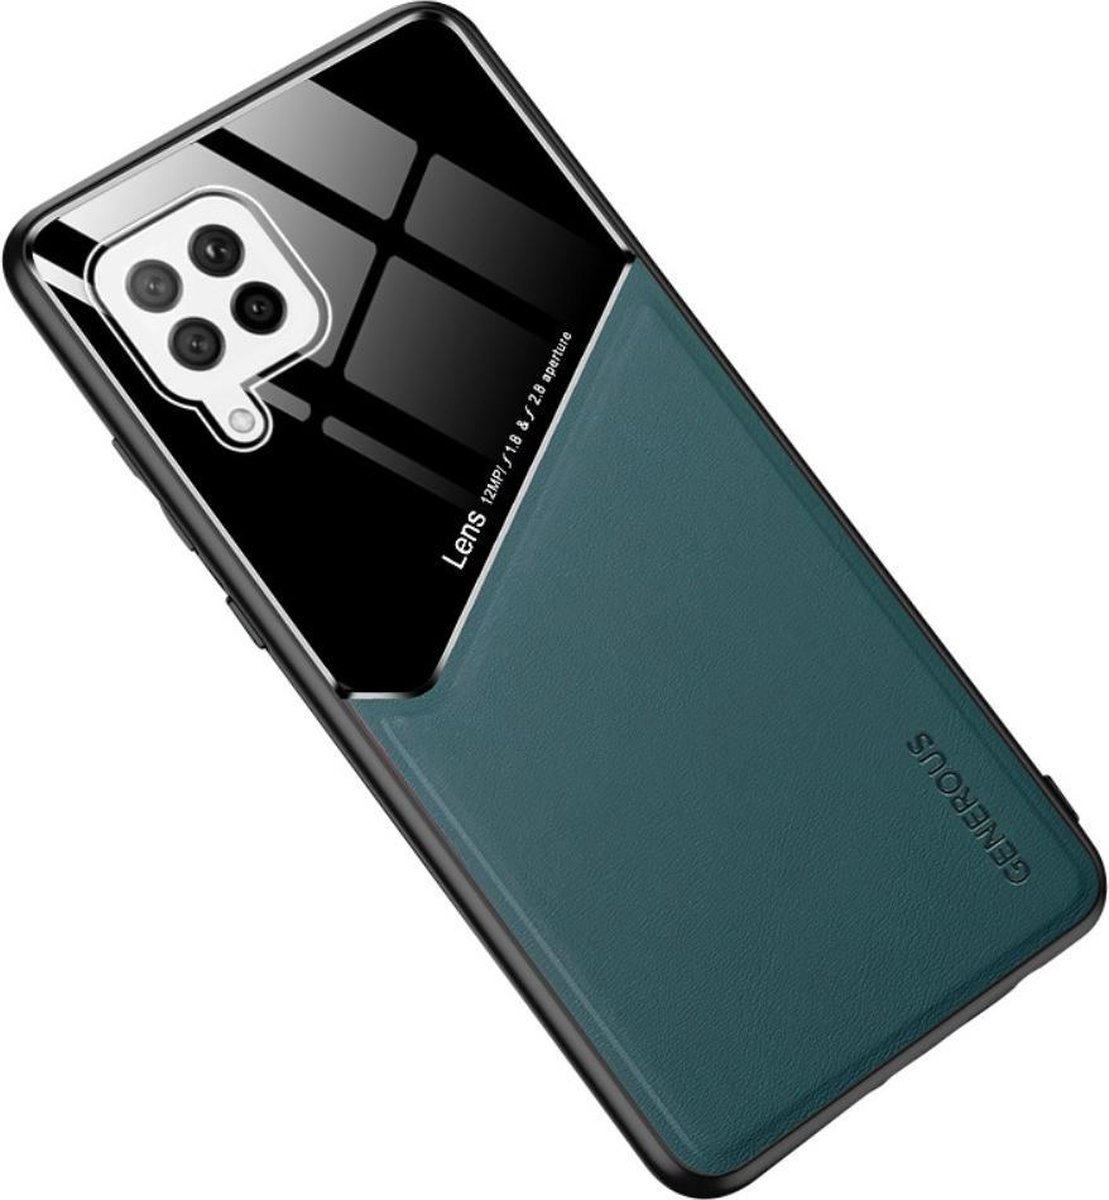 Groene hard cover Samsung Galaxy A42 geschikt voor magnetische autohouder